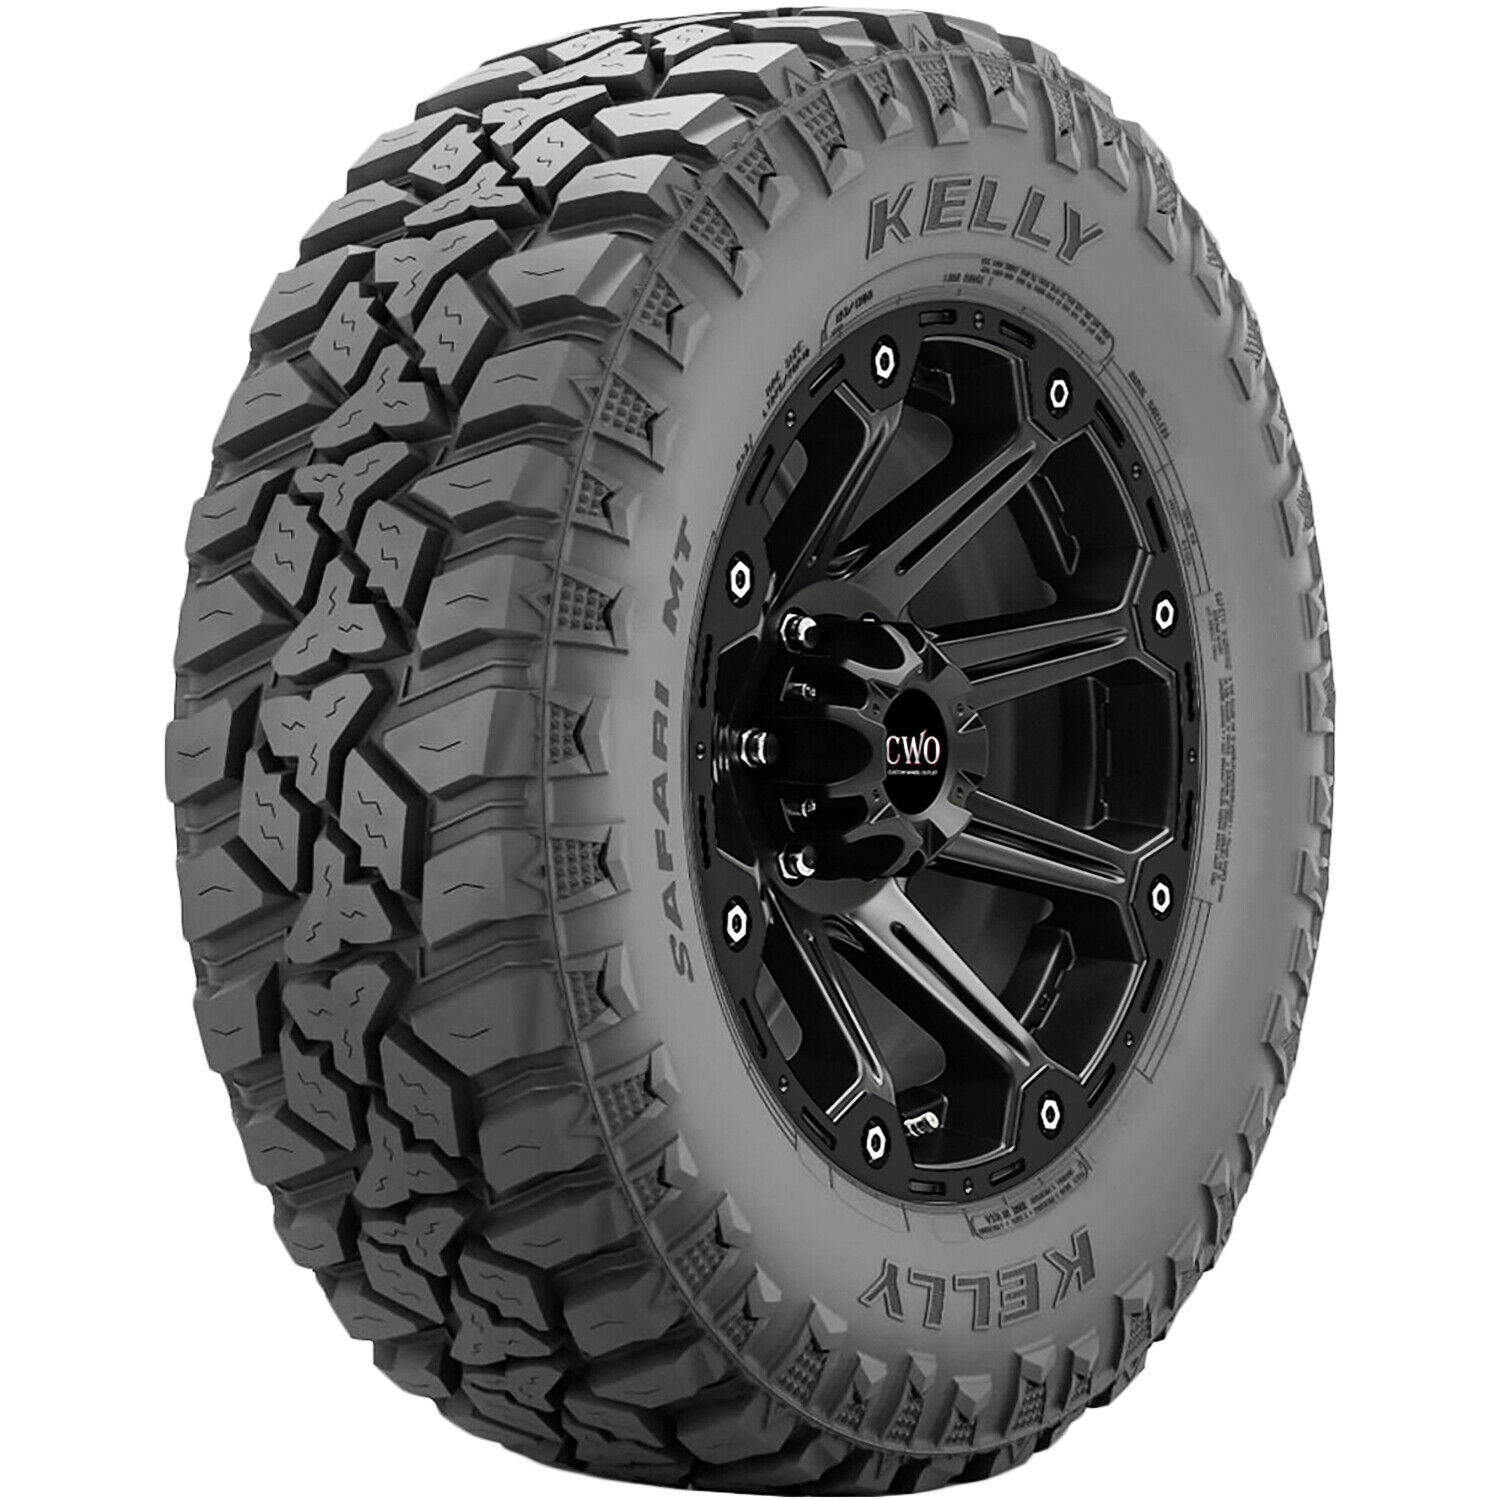 Tire LT 35X12.50R17 Kelly Safari MT M/T Mud Load E 10 Ply